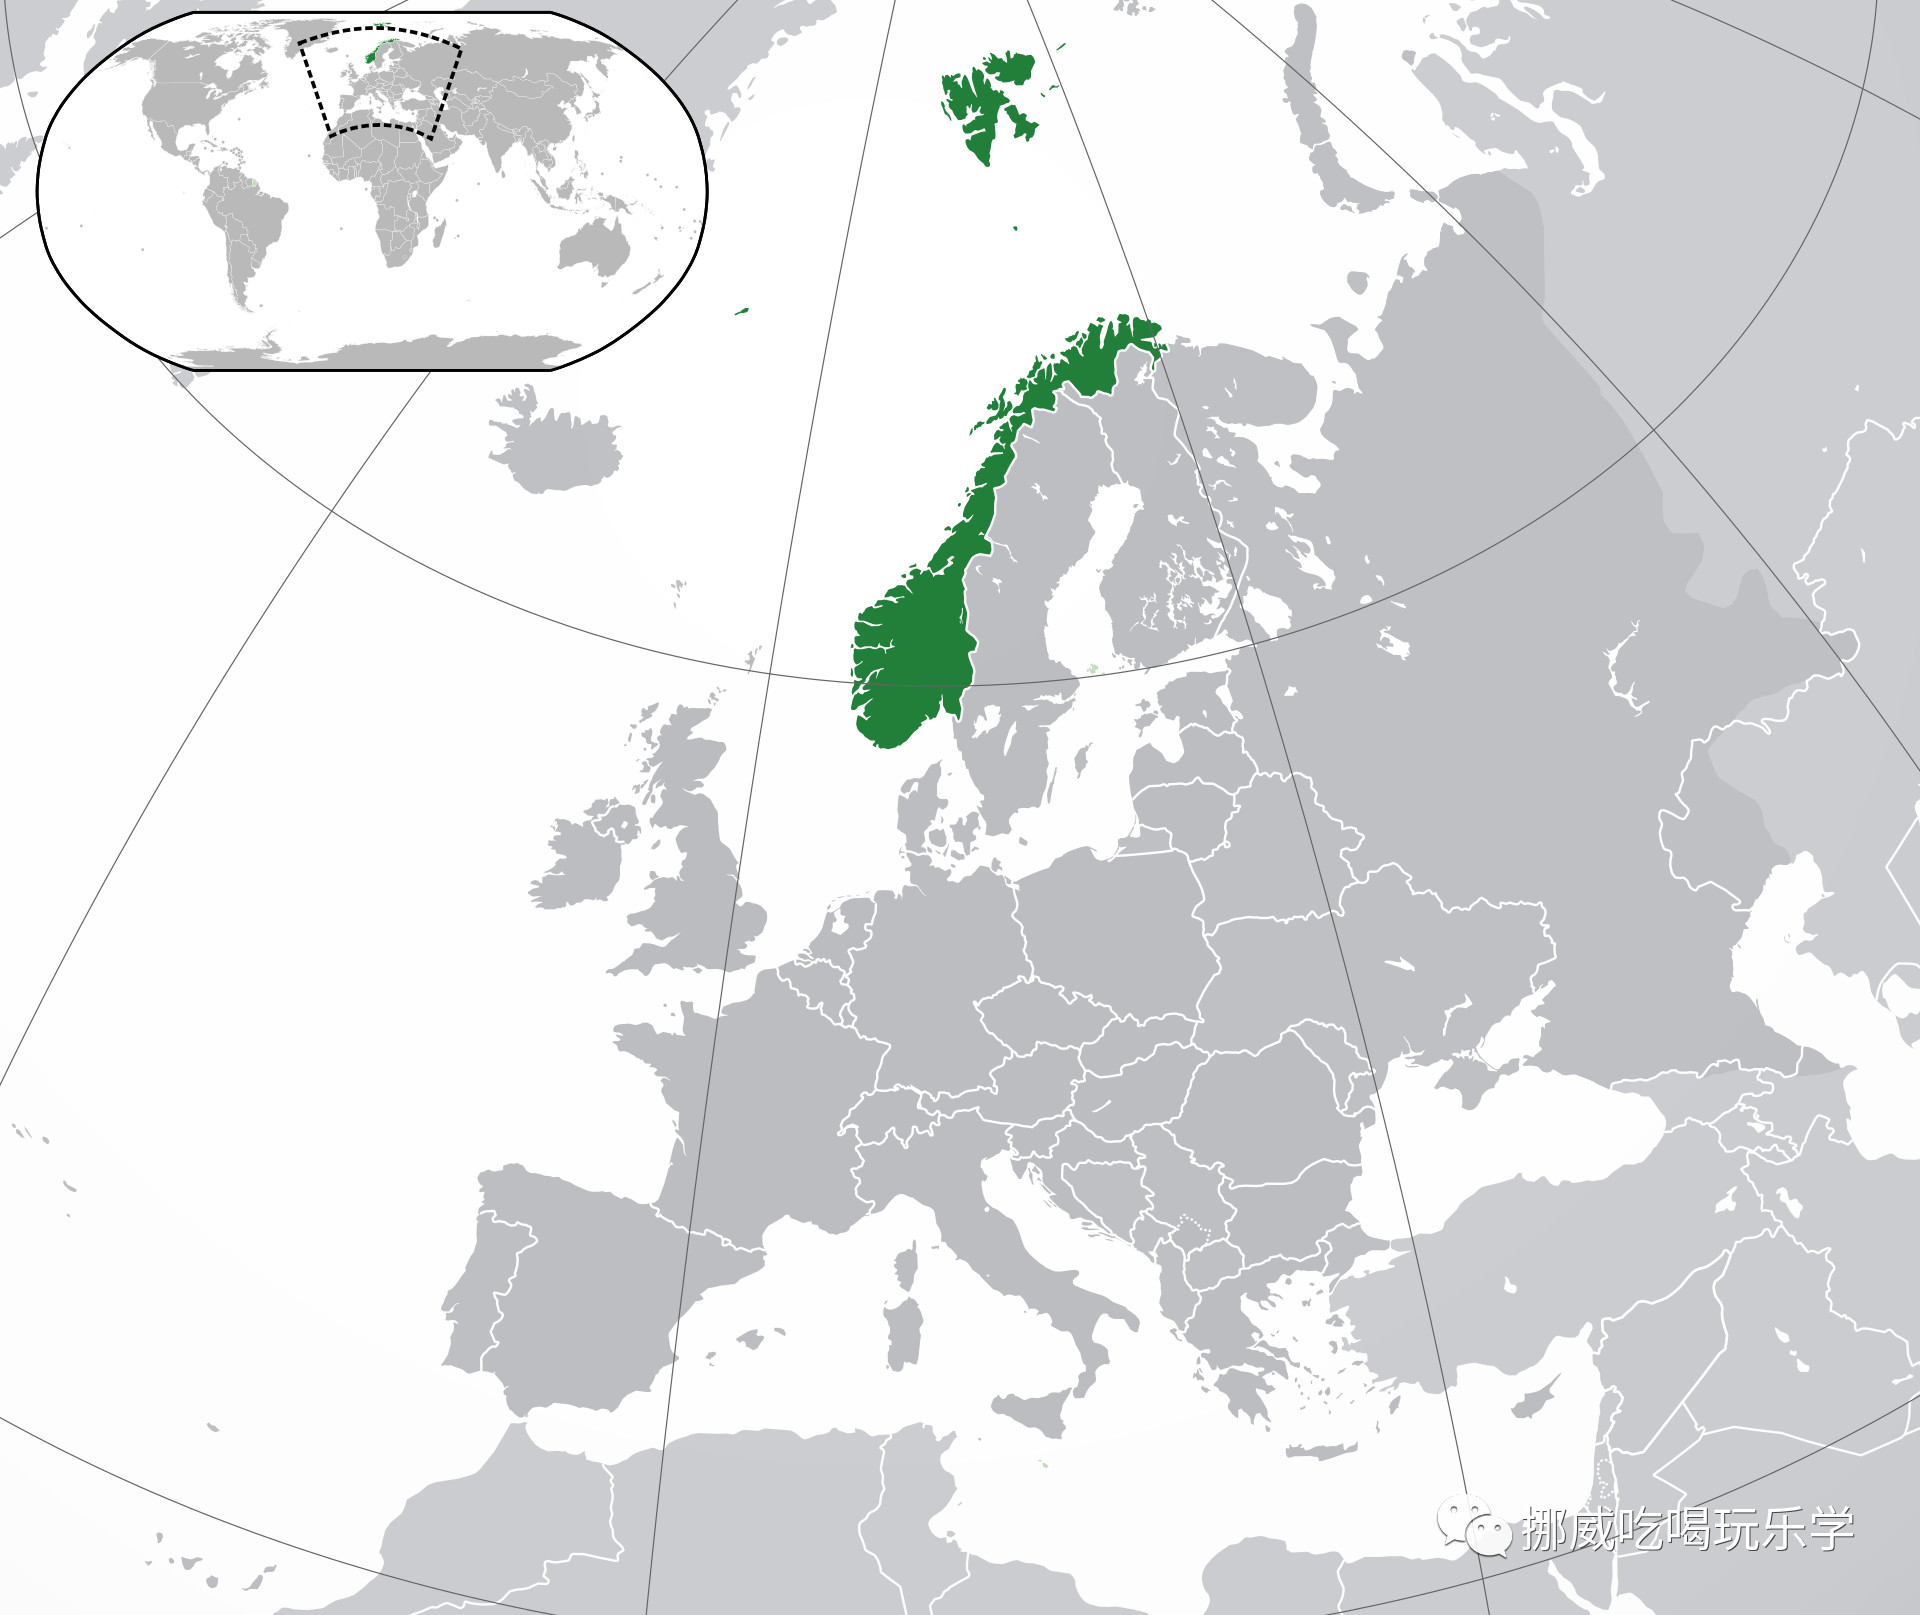 东邻瑞典,东北与芬兰和俄罗斯接壤,南同丹麦隔海相望,西濒挪威海